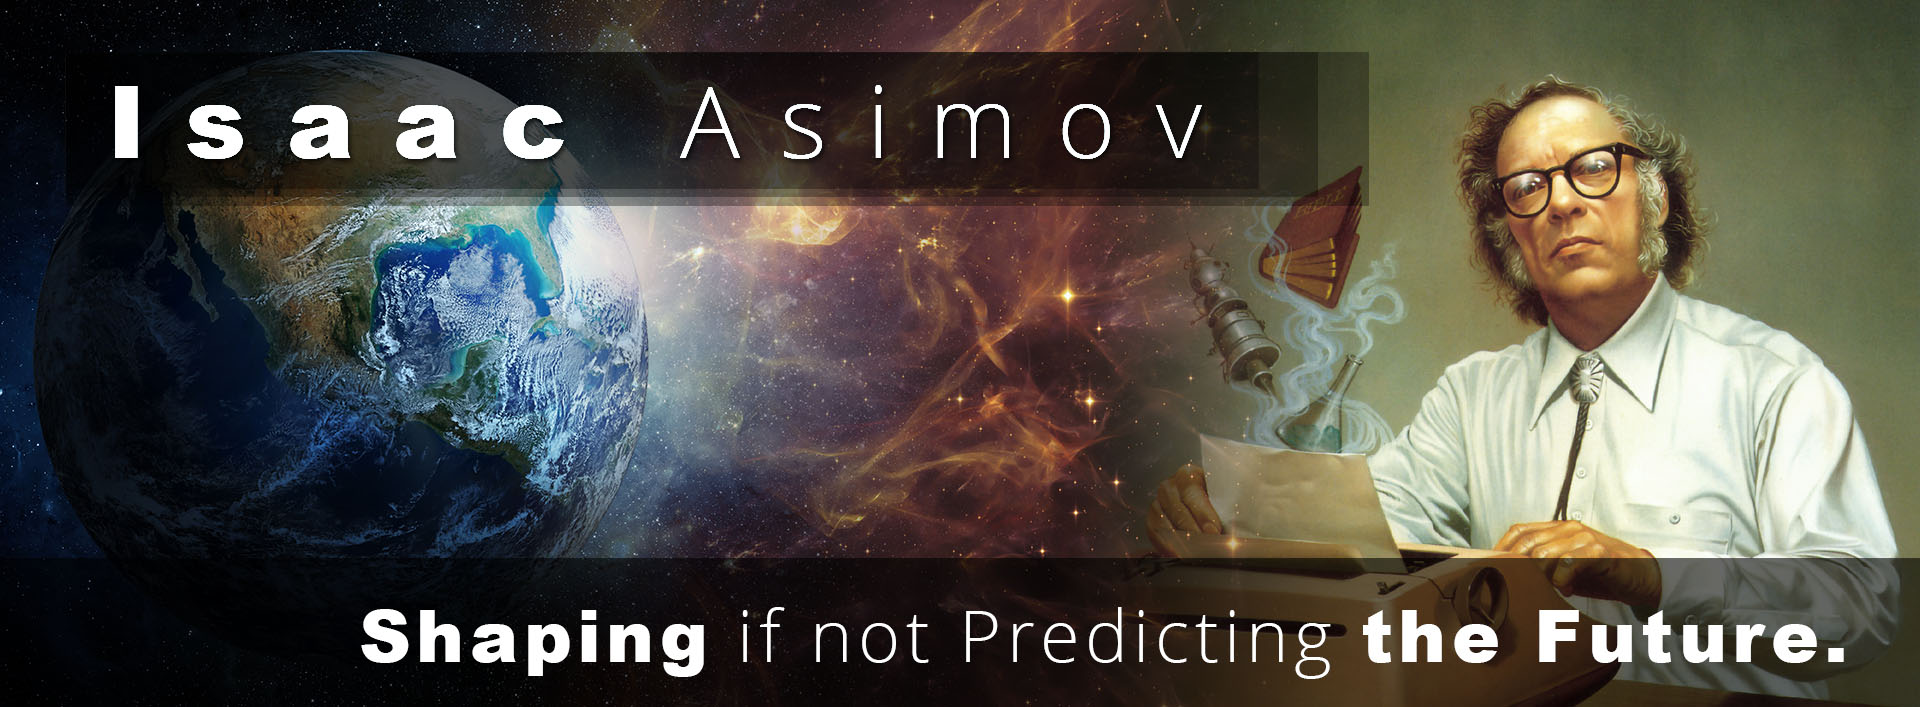 Isaac-Asimov__Shaping-if-not-Predicting-the-Future__1.01